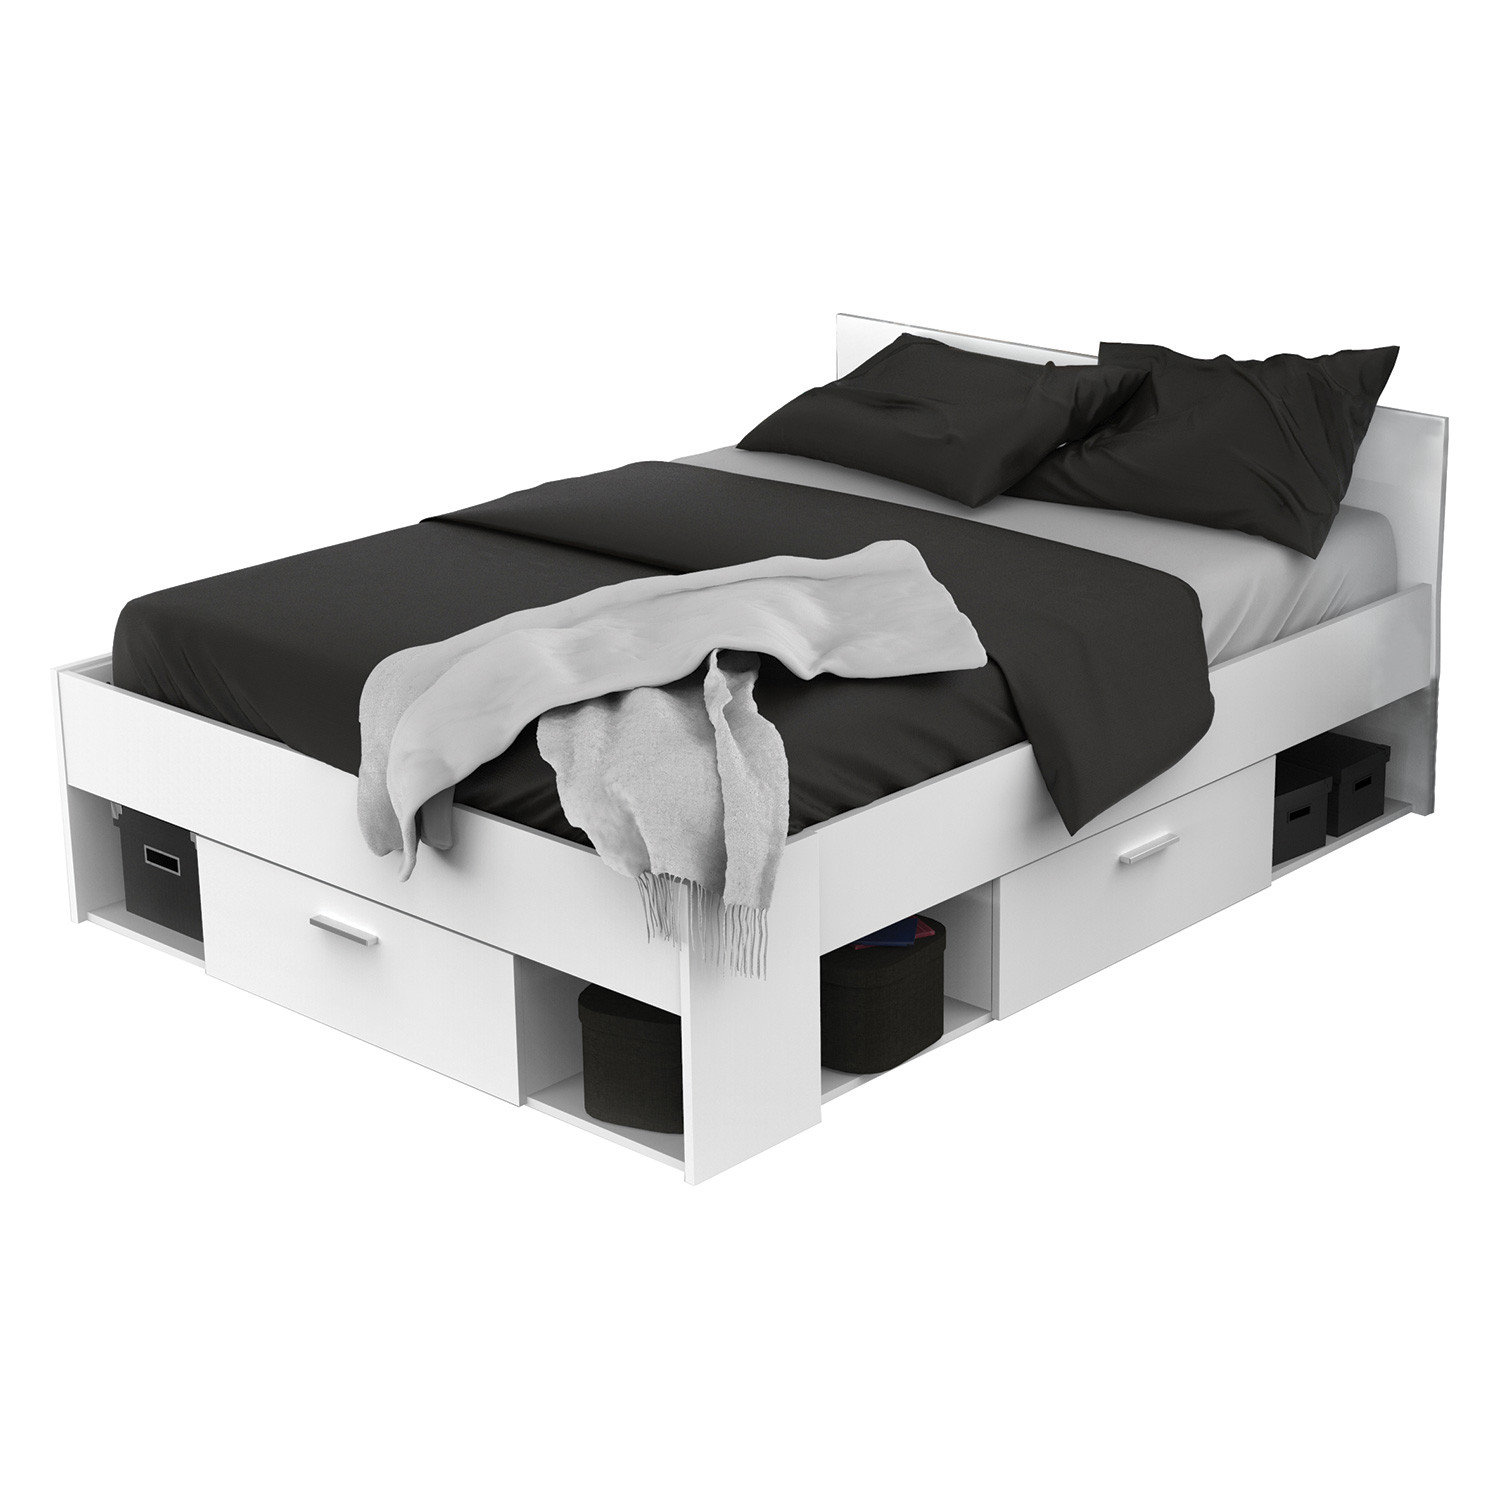 IDEA Многофункциональная кровать 140x190/200 CHICAGO жемчужно-белая